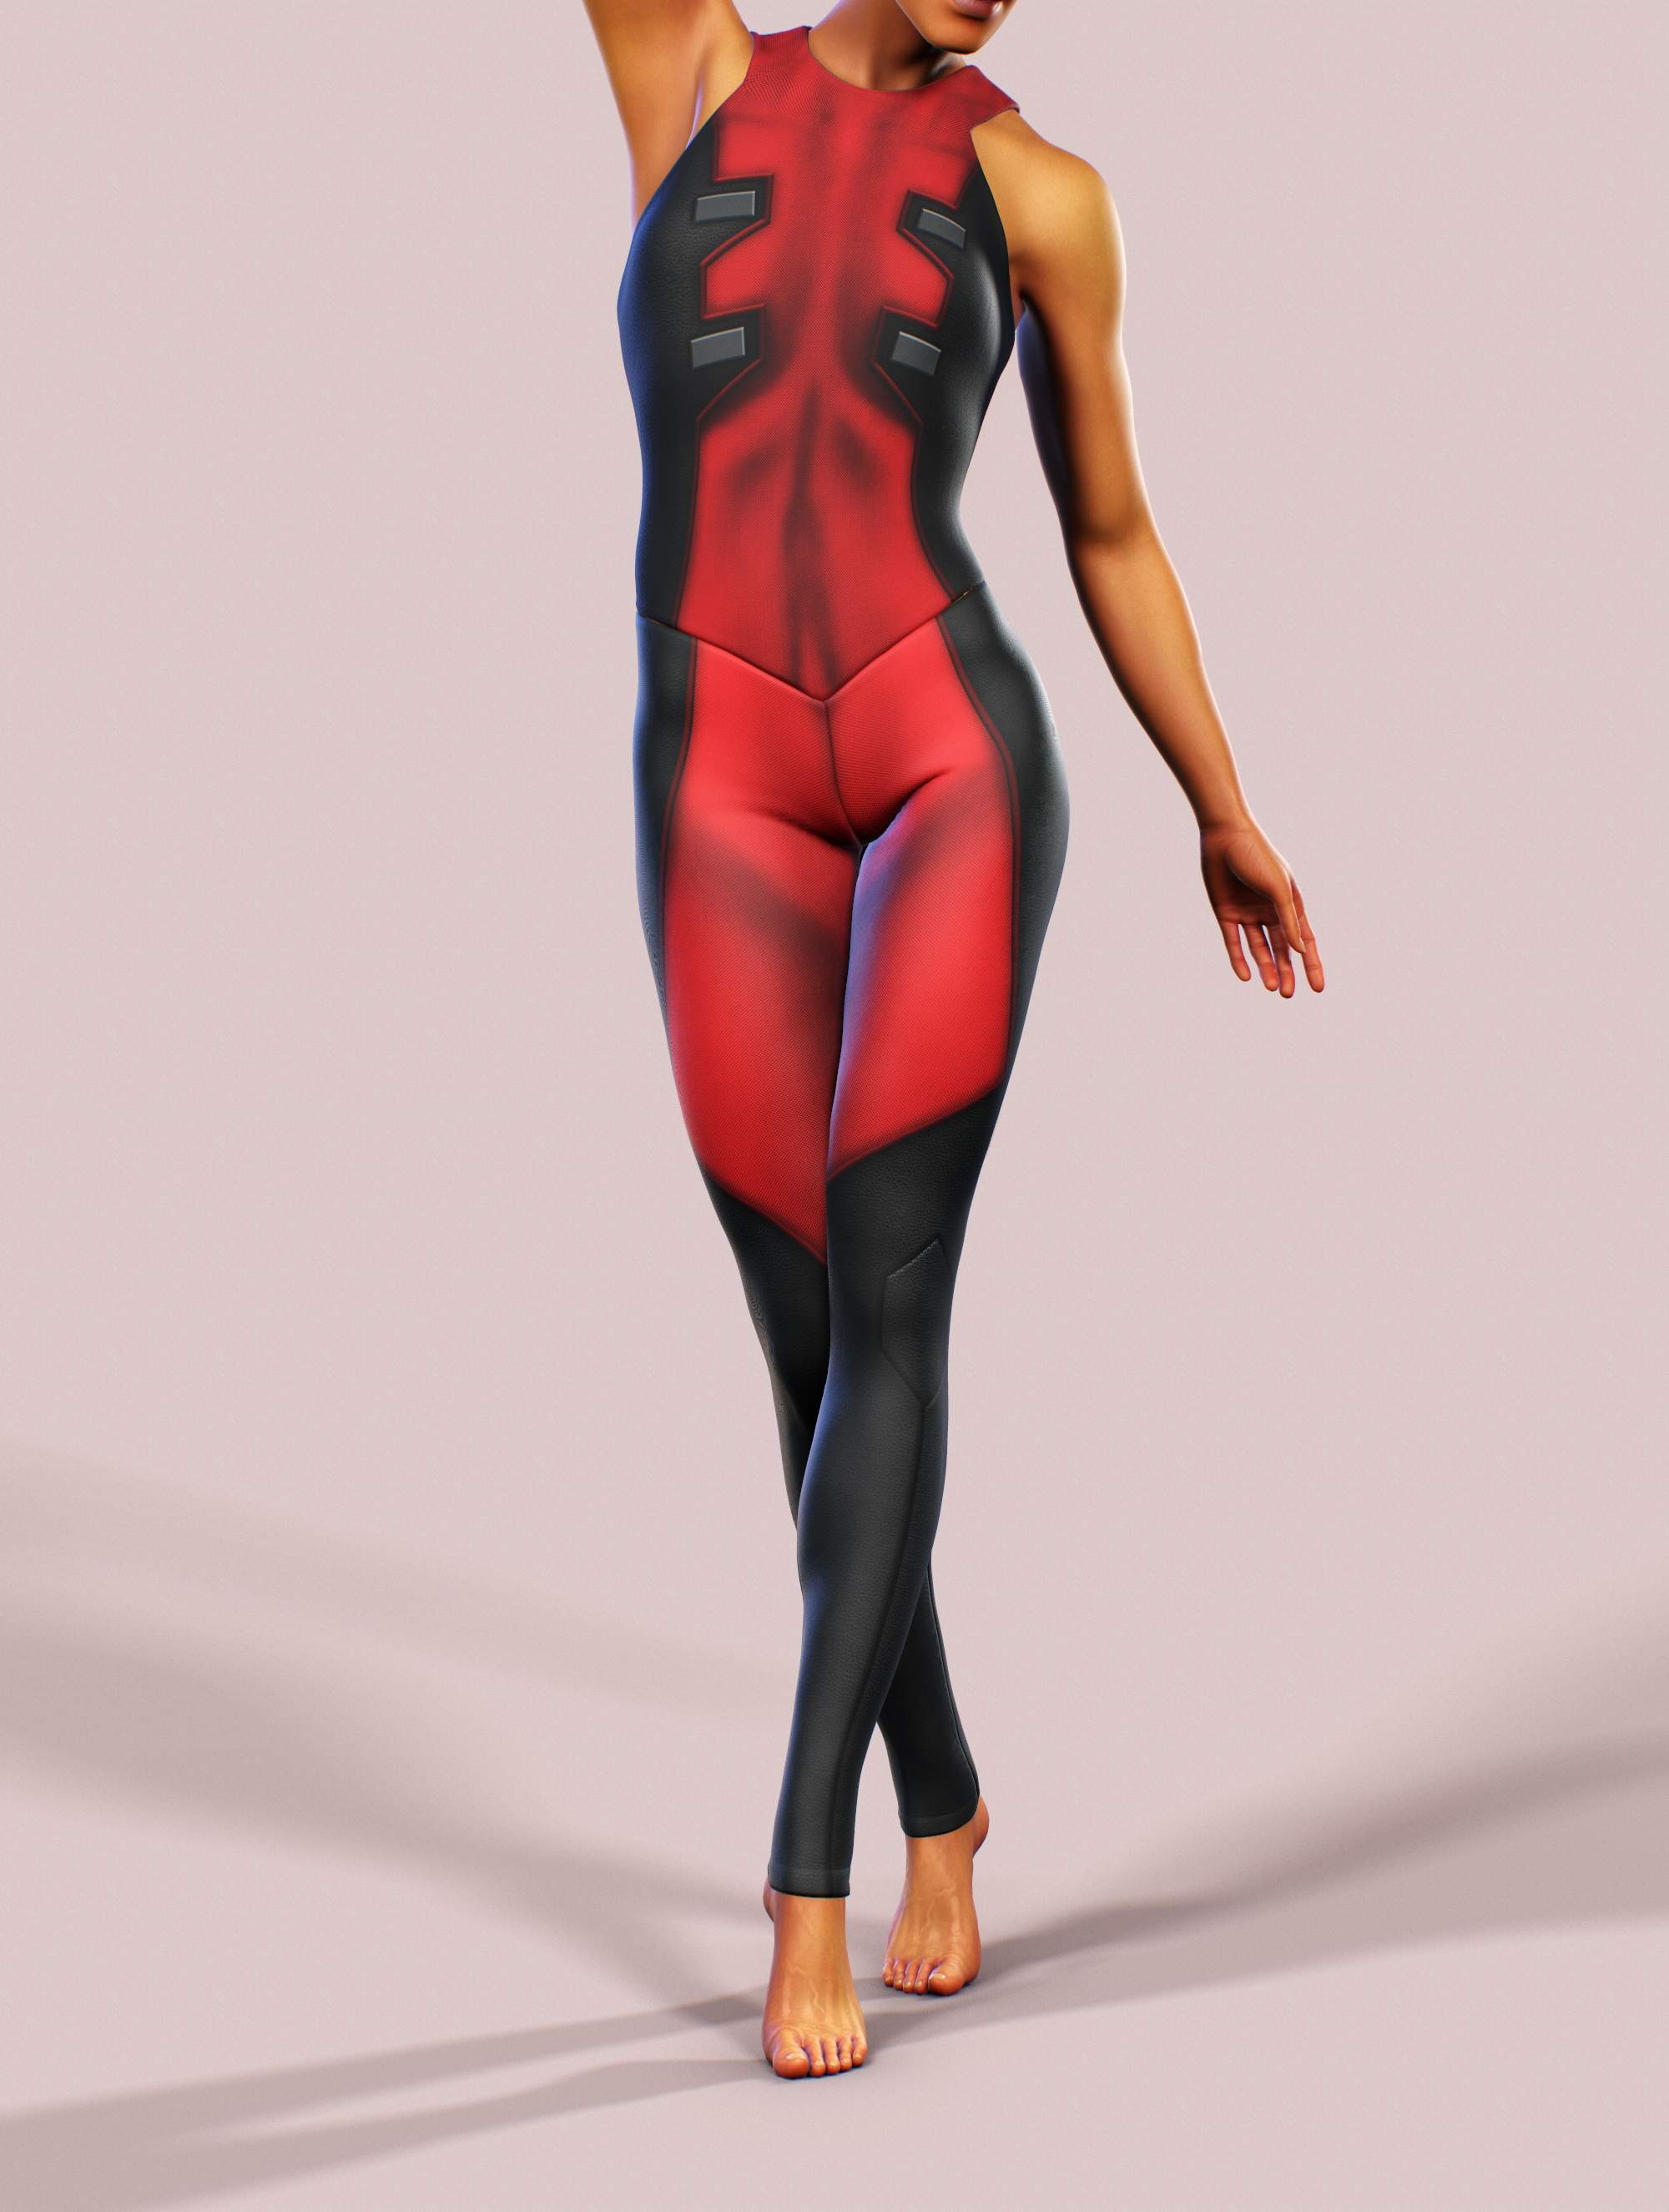 Superhero Suit Design